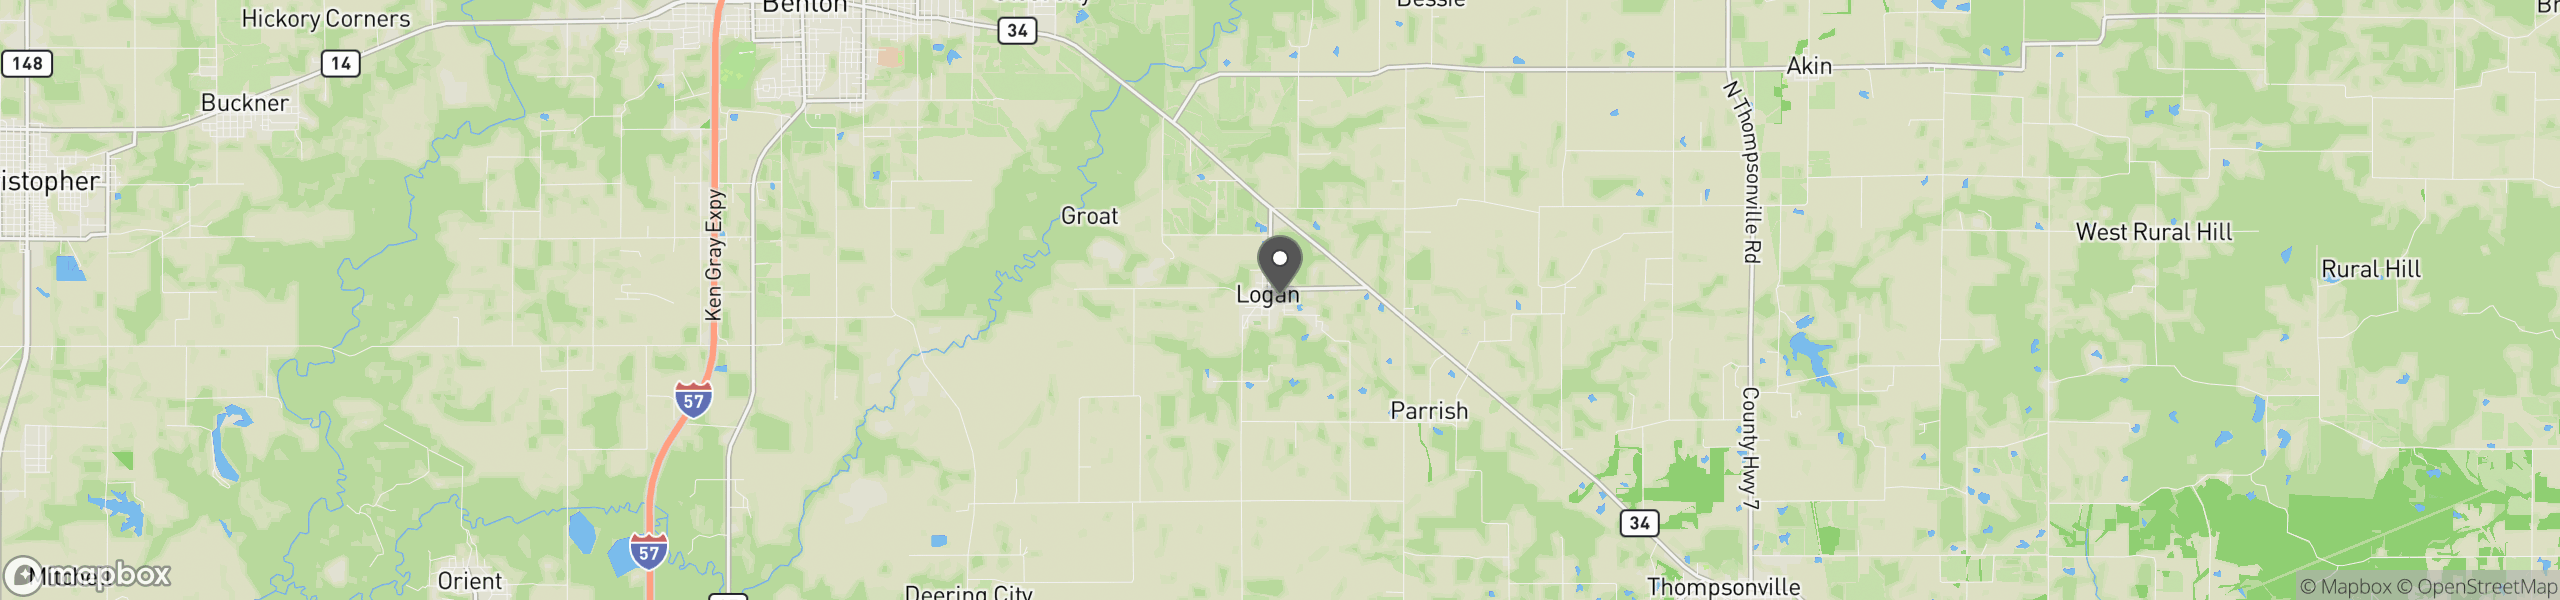 Logan, IL